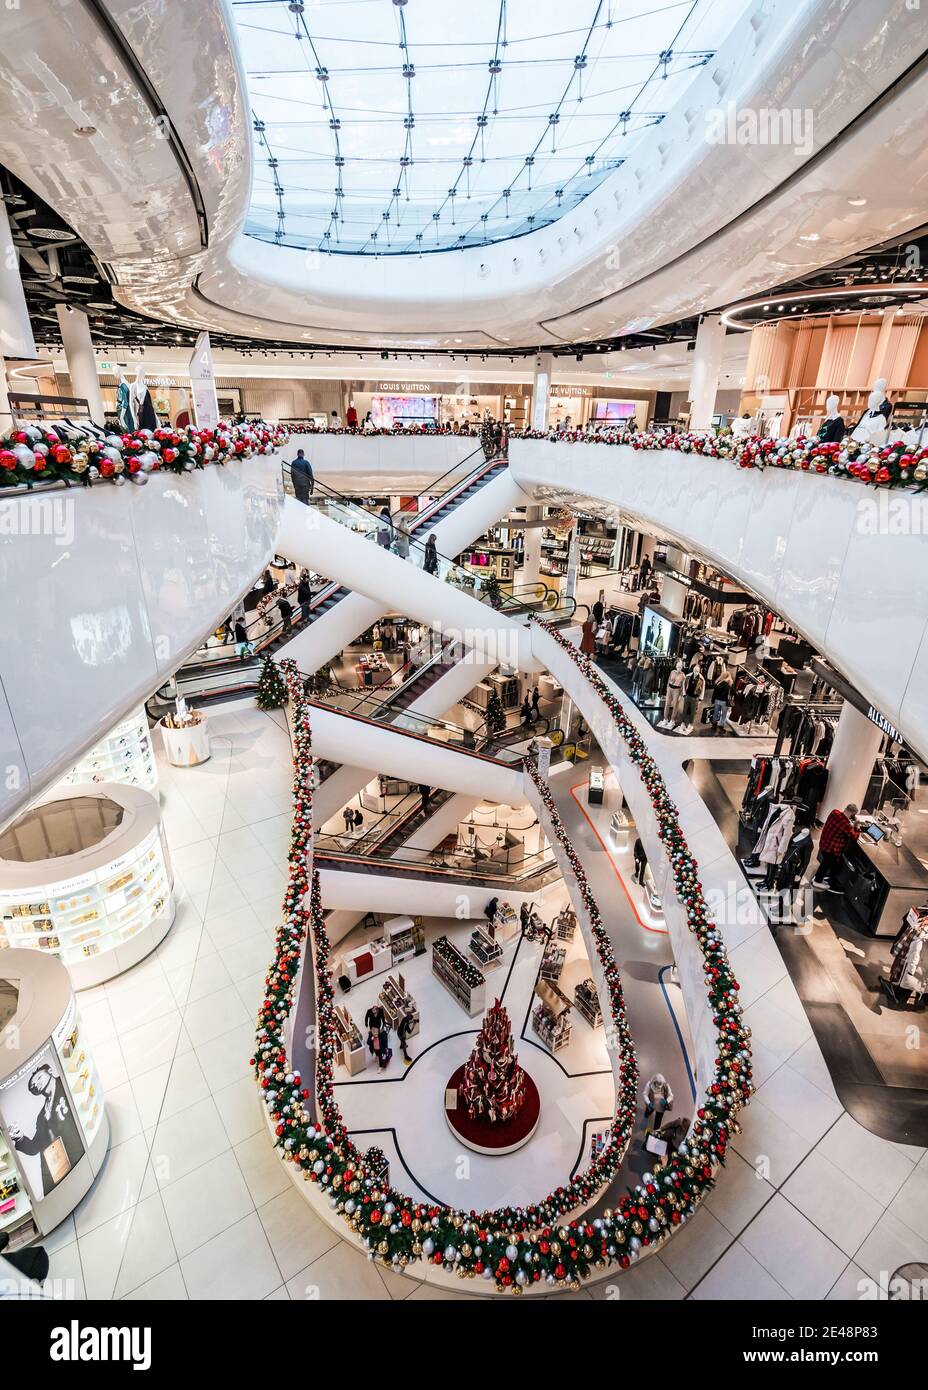 Grandi magazzini molto affollati con acquirenti su numerose scale mobili simmetriche Linee di simmetria Bright Natale acquirenti gennaio vendite su più piani Foto Stock